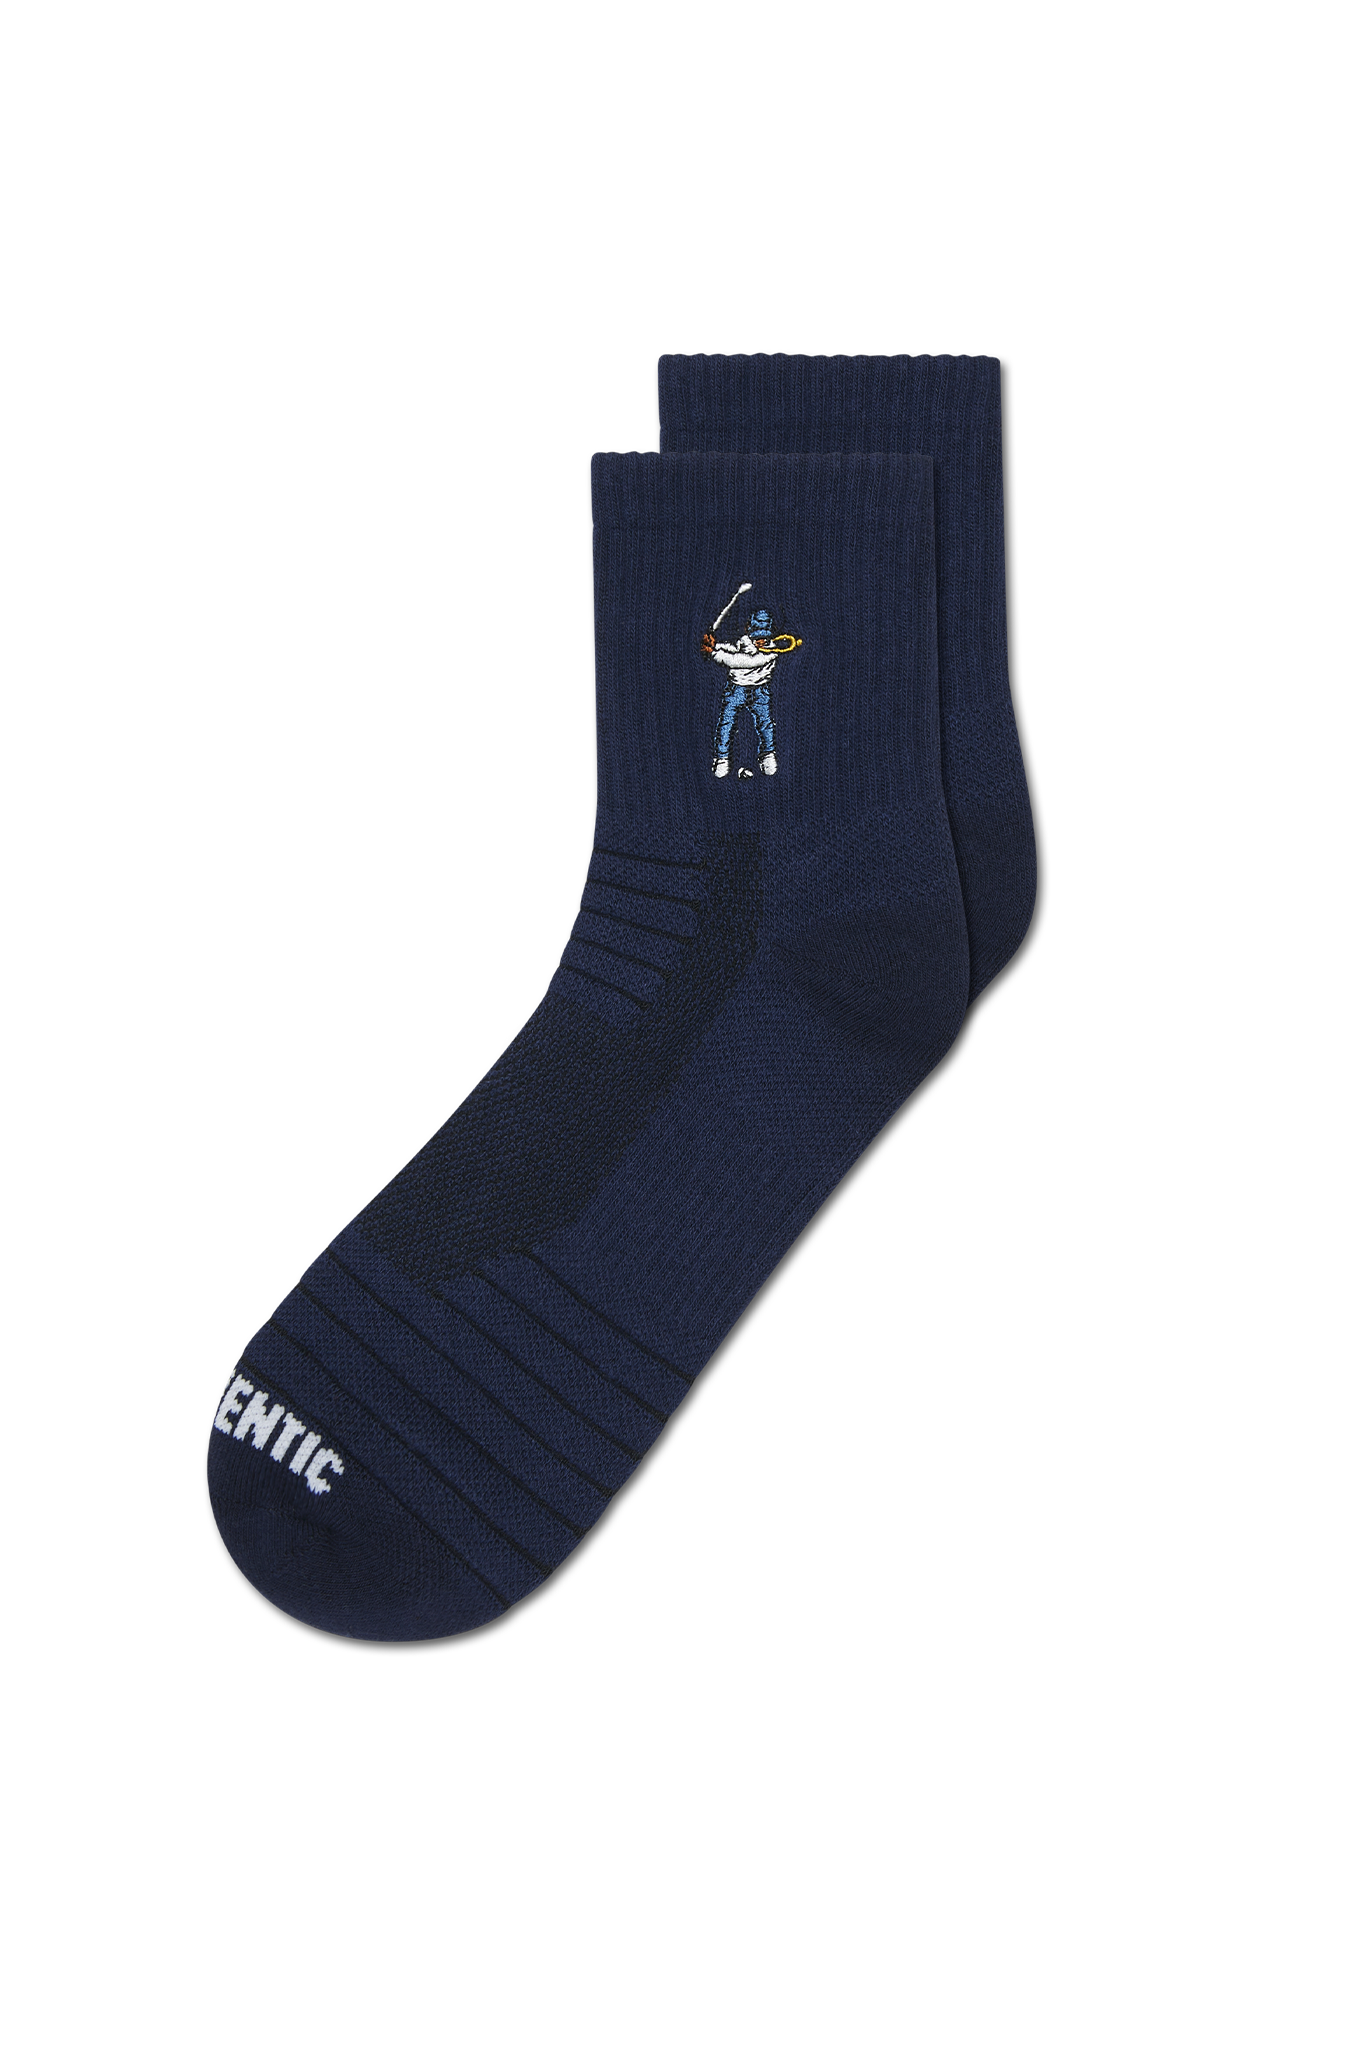 Eastside Golf Ankle Height Logo Socks Navy